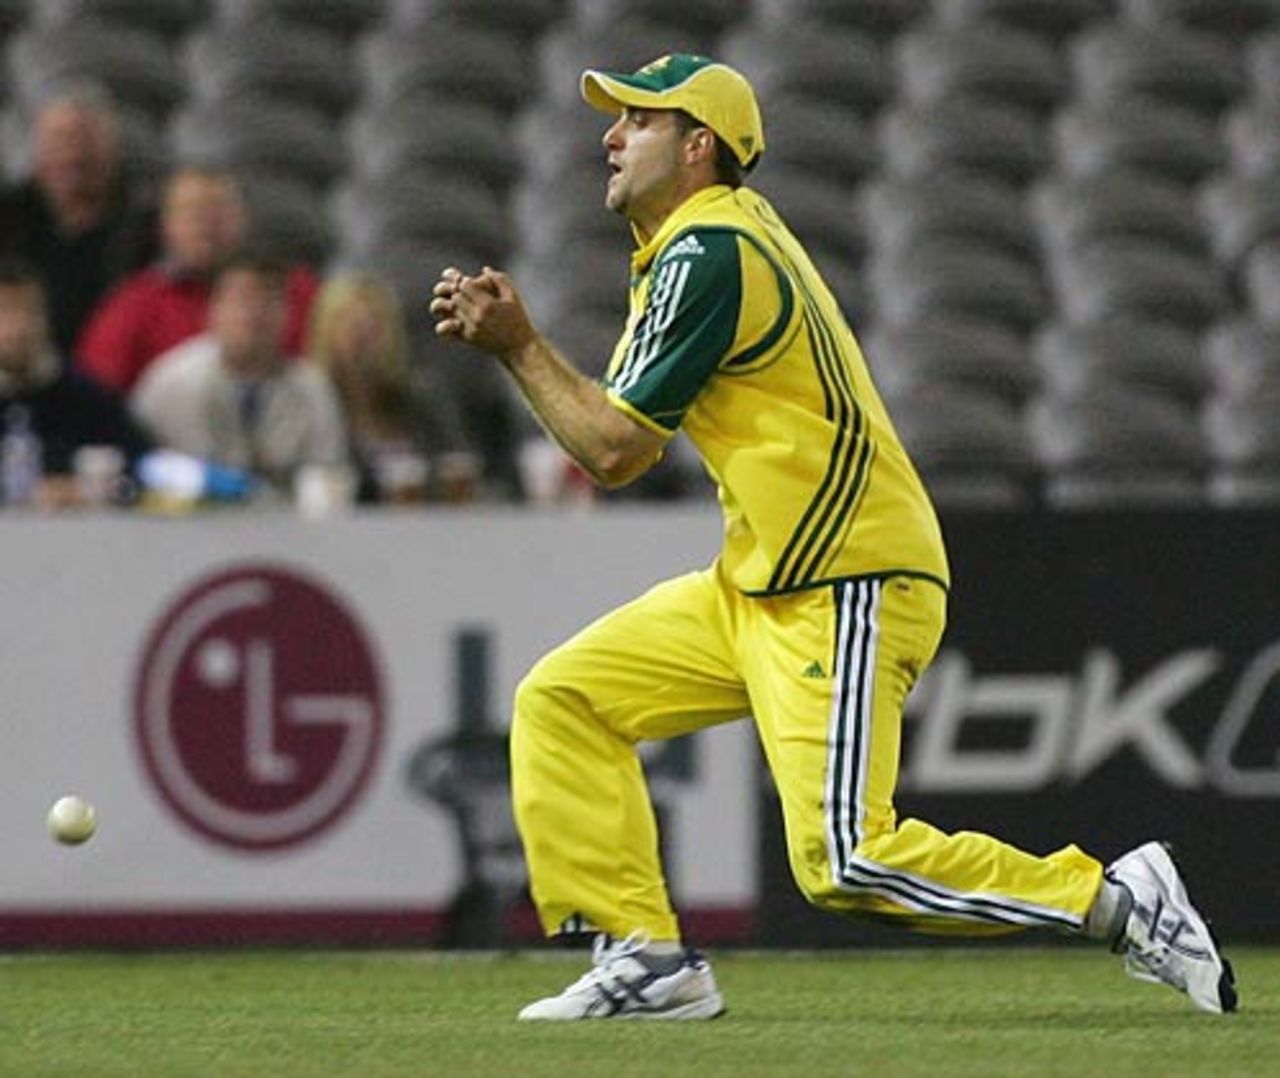 Simon Katich drops Kumar Sangakkara, Australia v World XI, 1st ODI, Super Series, Melbourne, October 5, 2005